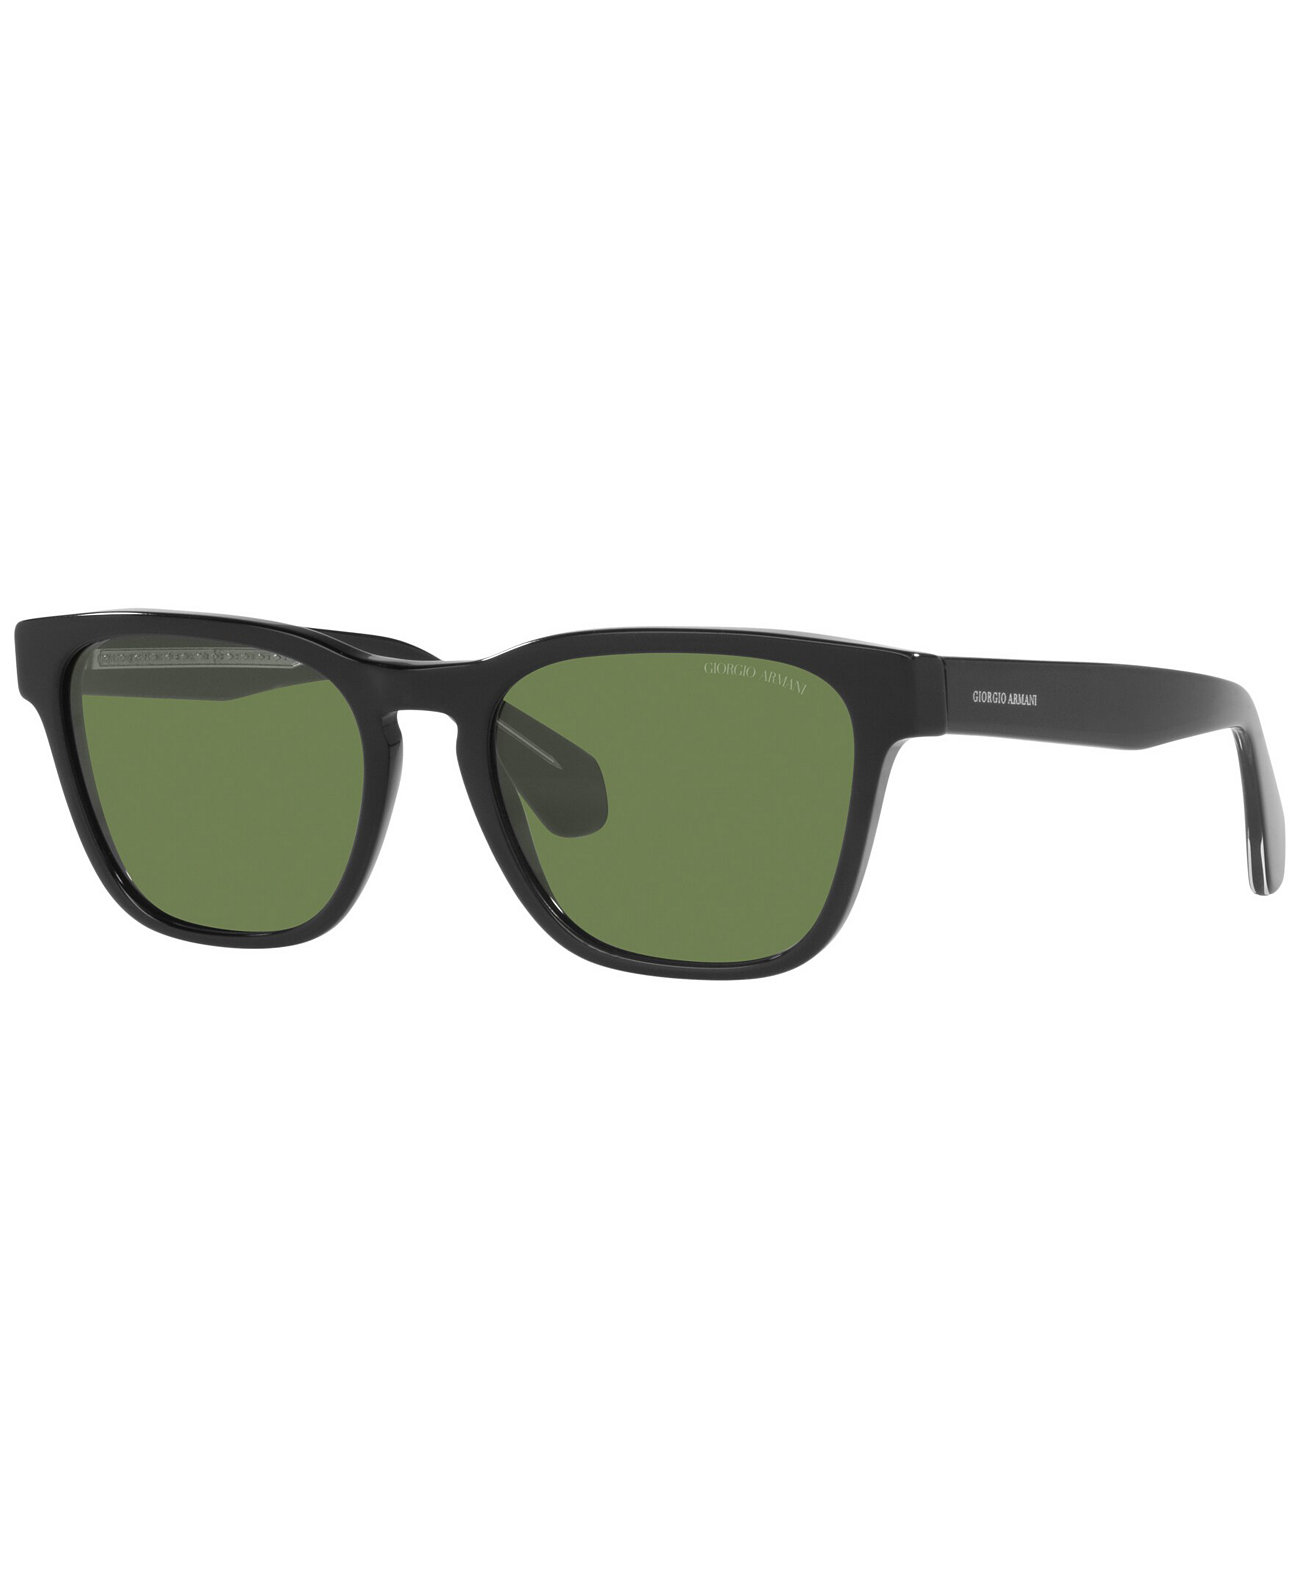 Men's Sunglasses, AR8155 55 Giorgio Armani